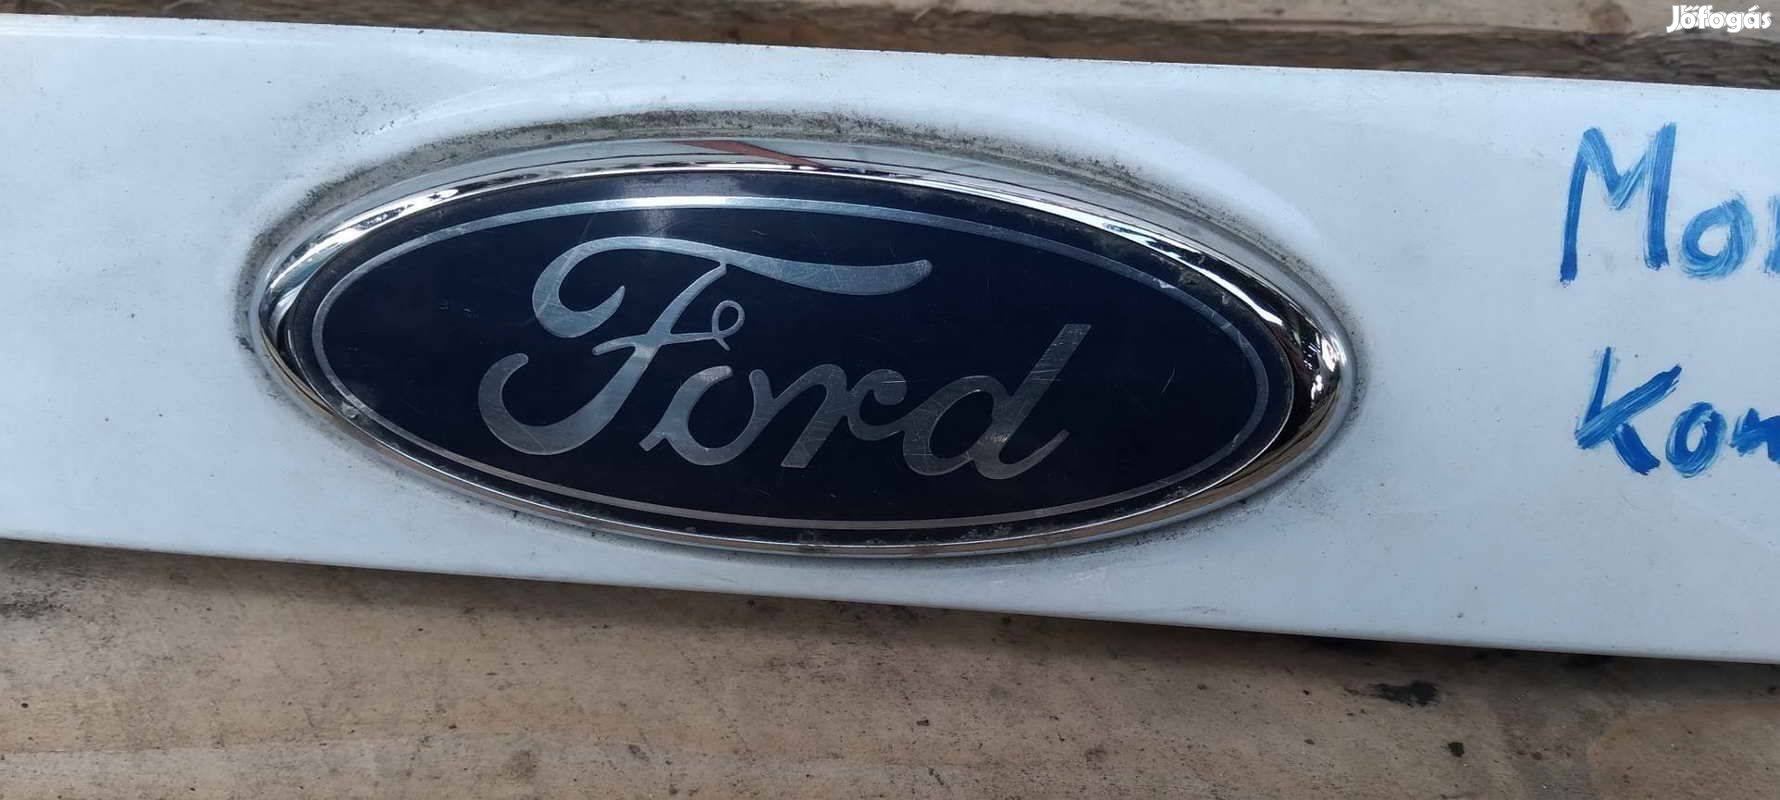 Eladó Ford Mondeo mk4 csomagtér ajtó borítás kombi 2011 től 14:00 ig